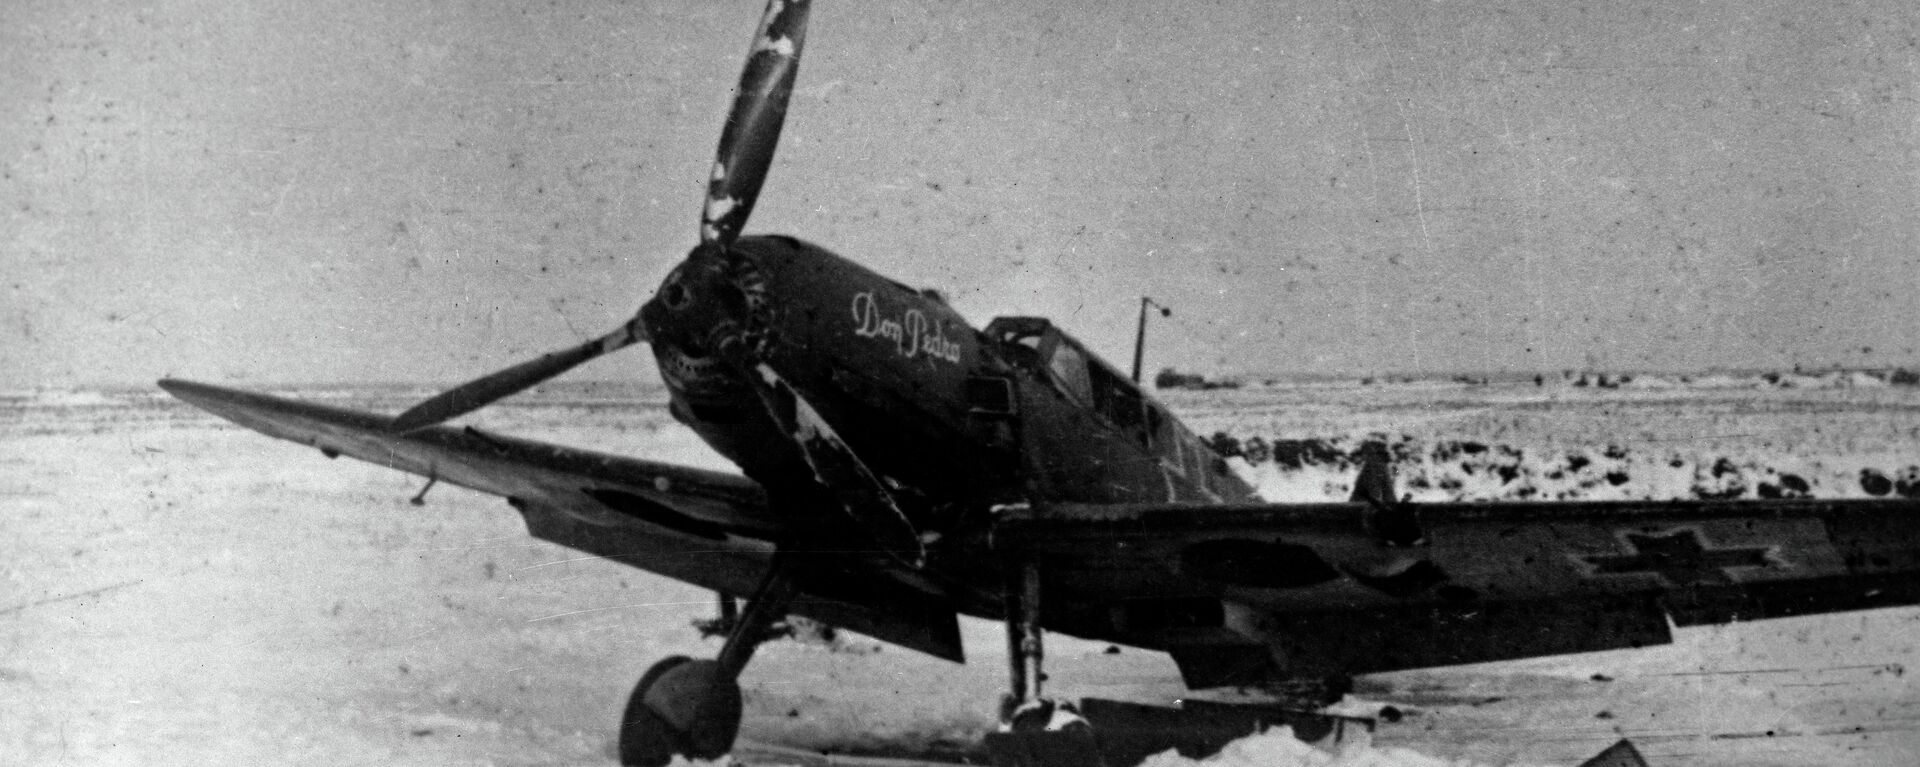 Avión de la División Azul capturado por las tropas soviéticas en Stalingrado. Diciembre de 1942 - Sputnik Mundo, 1920, 29.01.2020